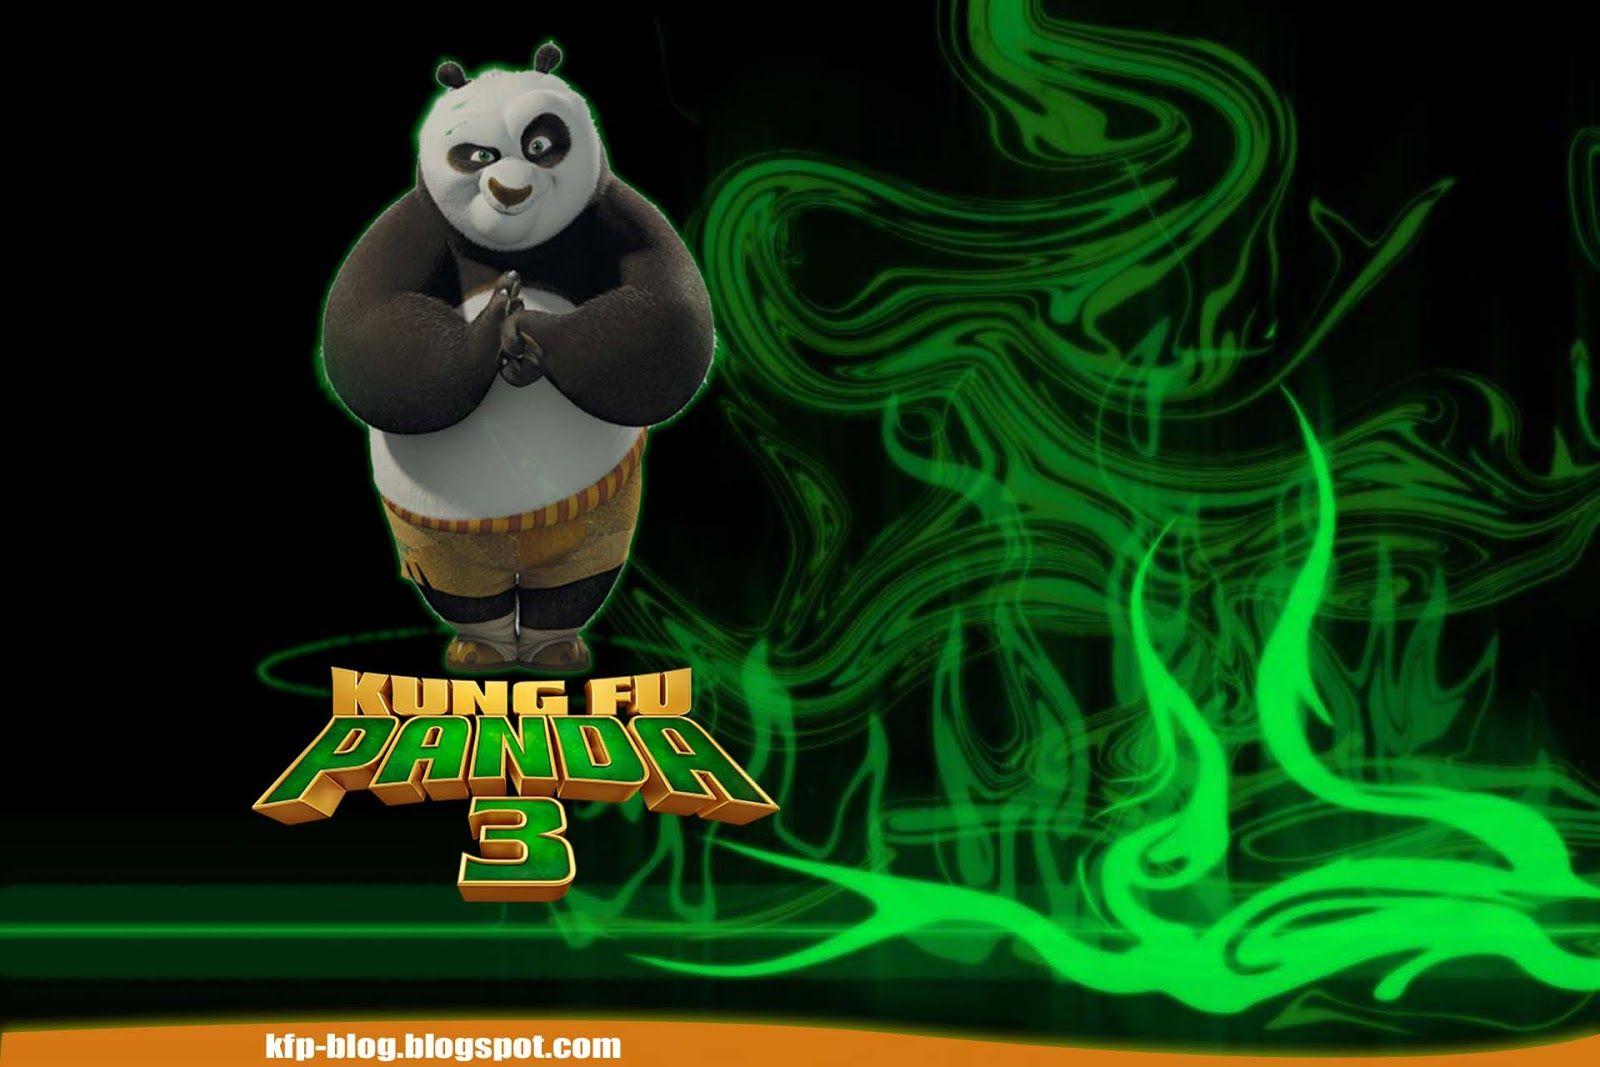 Kung Fu Panda Series HD Wallpaper, Reviews and News: Kung Fu Panda